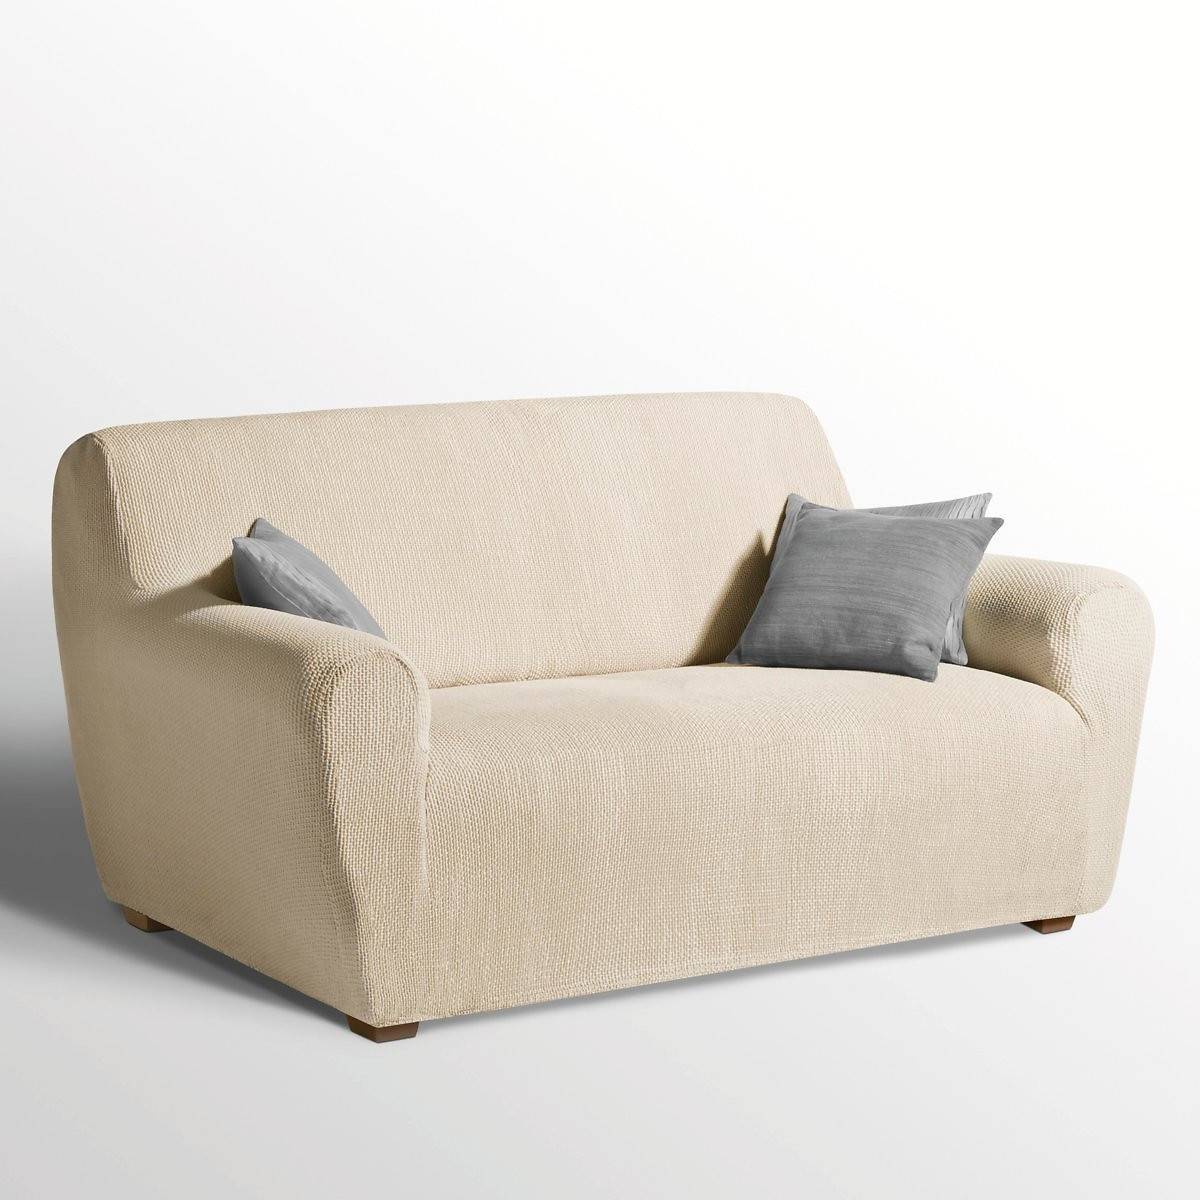 Funda de sofa universal de La Redoute en color crudo